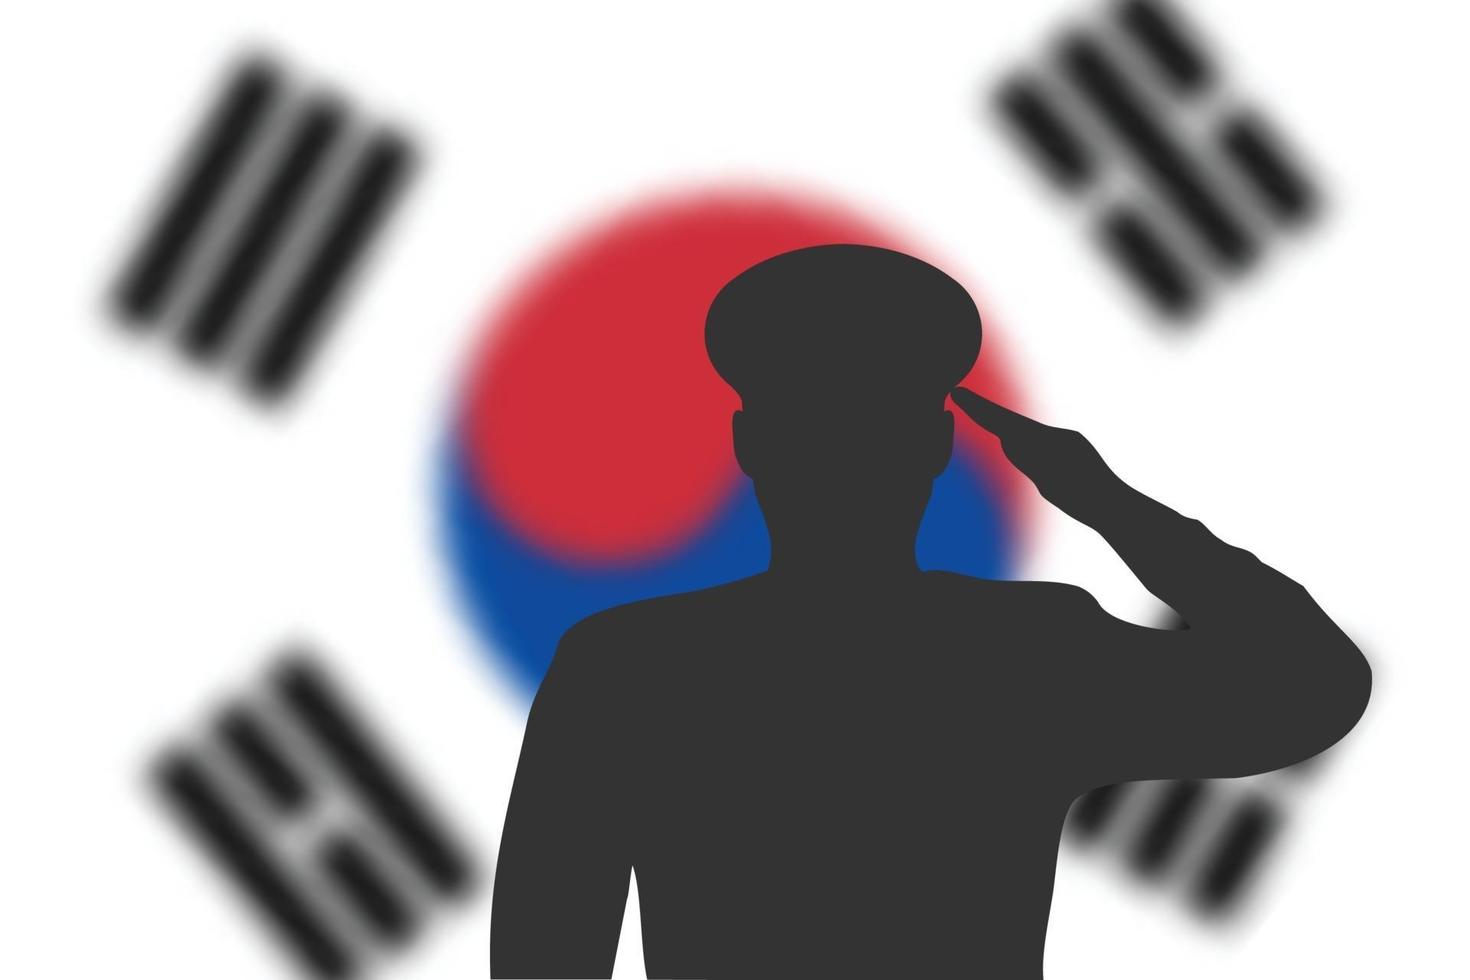 Lötsilhouette auf Unschärfehintergrund mit Südkorea-Flagge. vektor